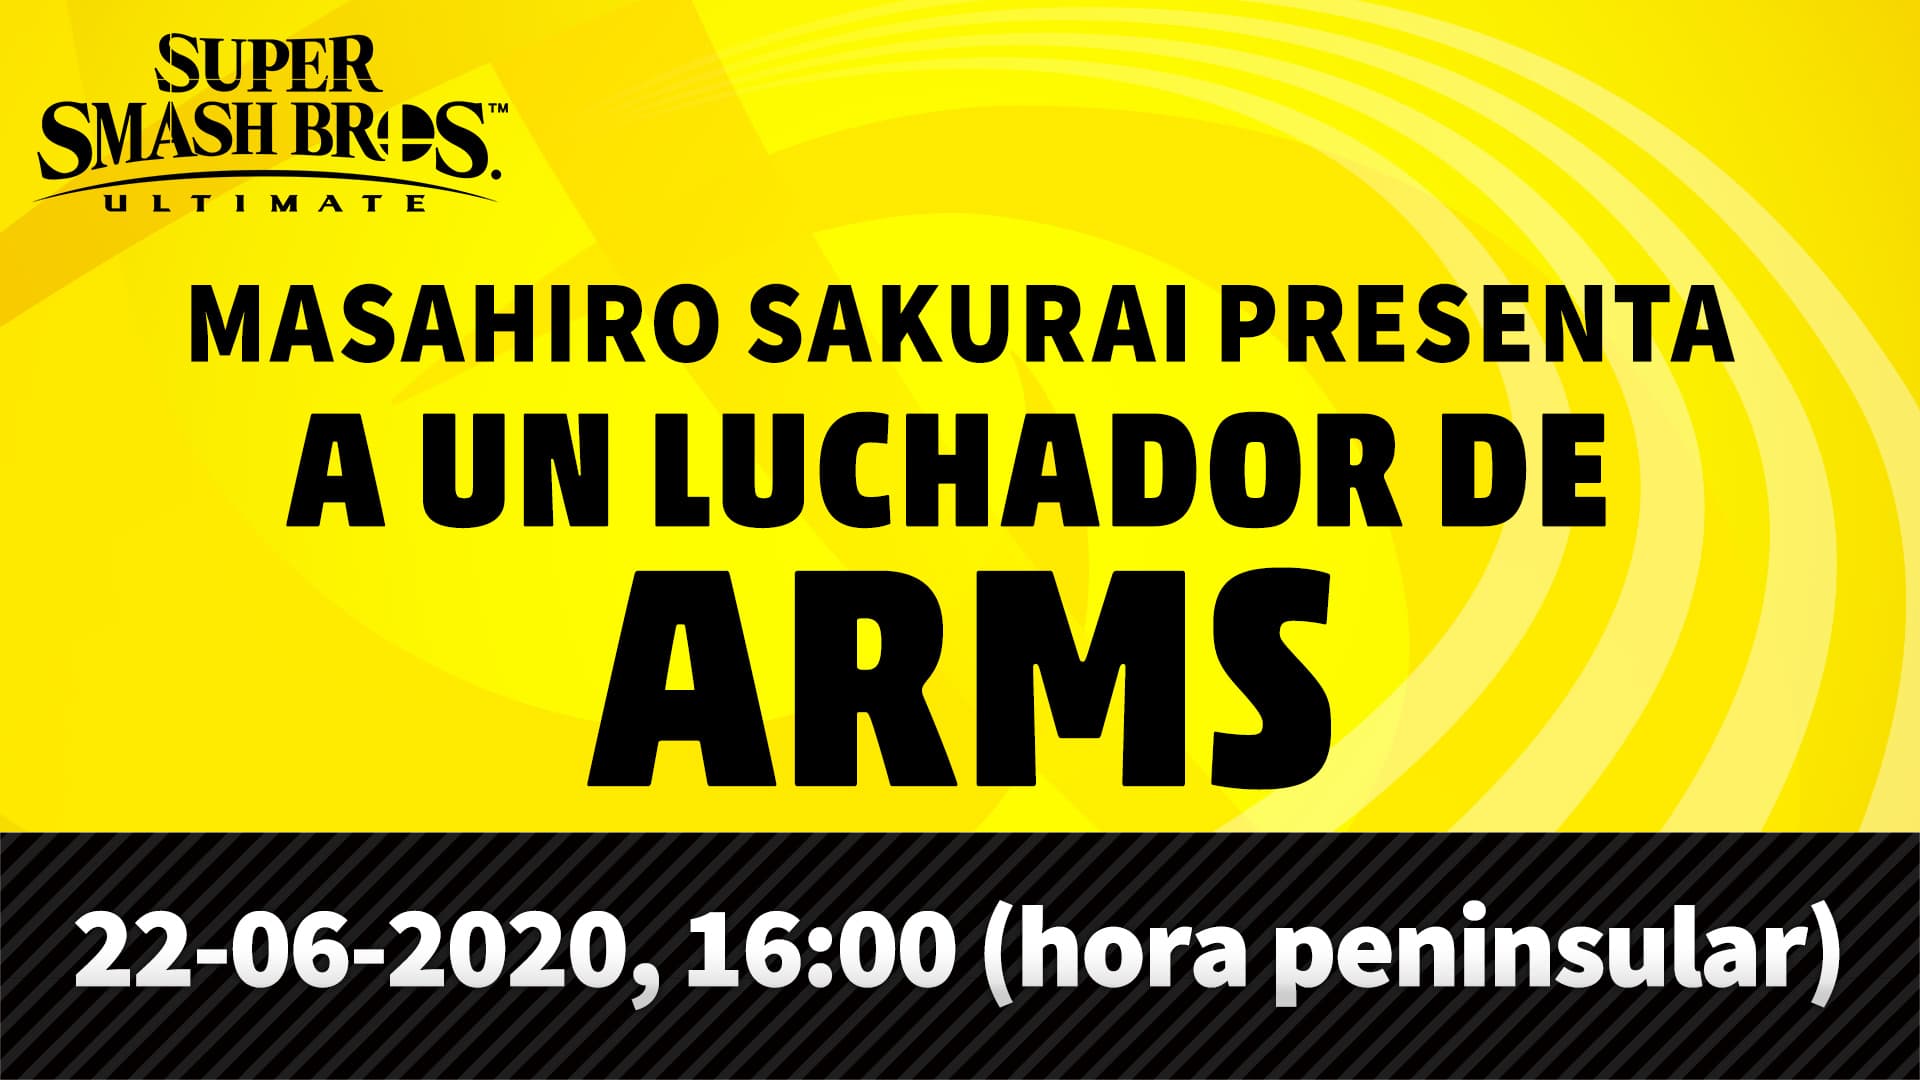 El personaje de ARMS para Super Smash Bros. Ultimate será presentado el 22 de junio en un directo con Sakurai